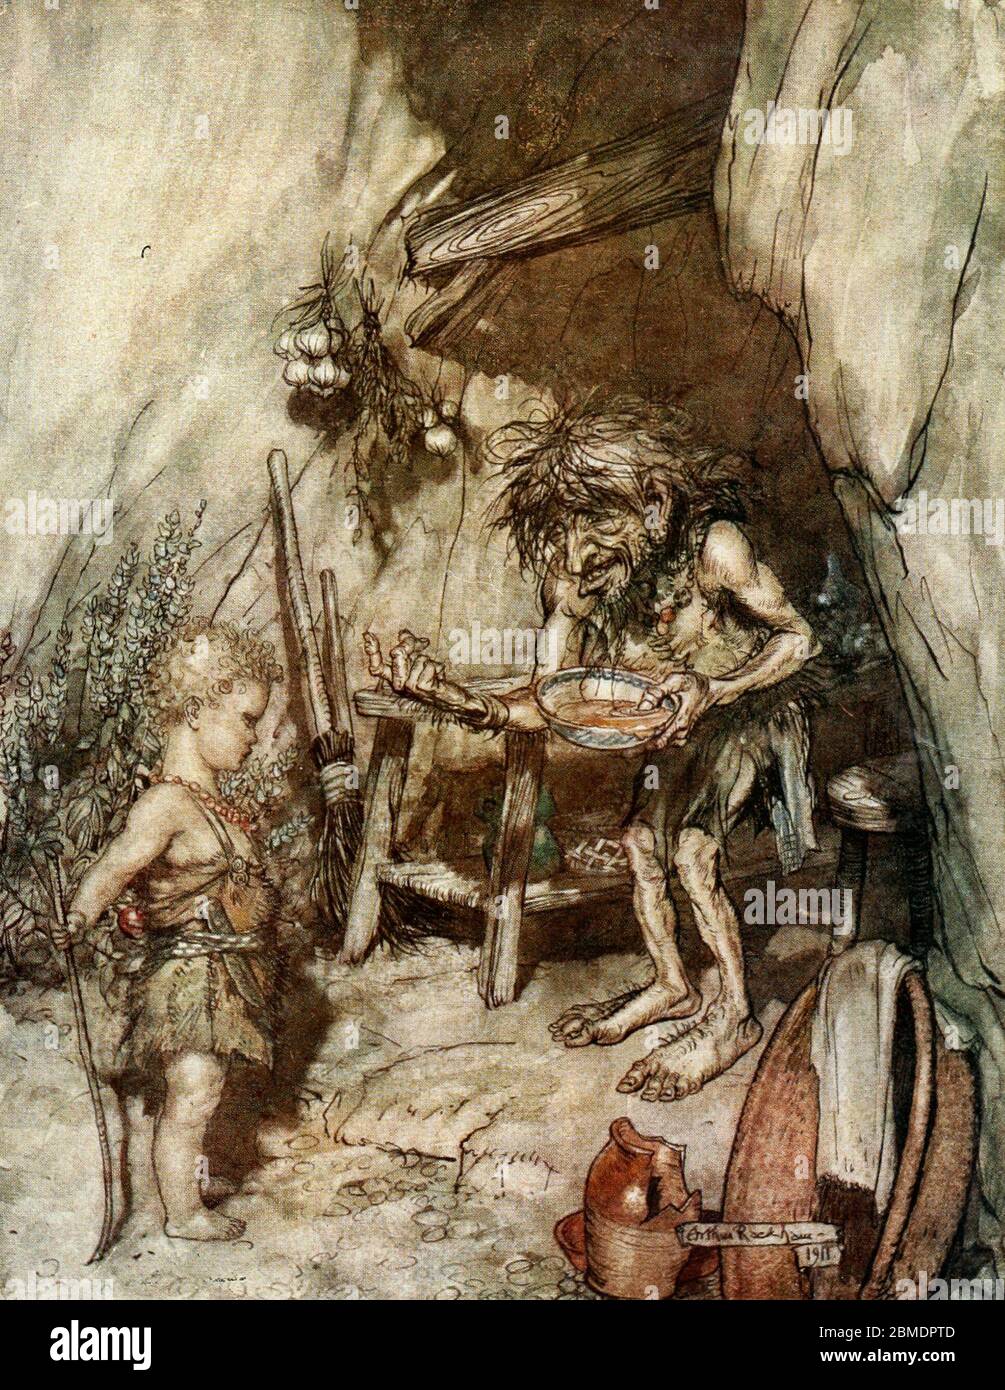 MIME et le bébé Siegfried, de Siegried, l'anneau du Nibuleng, Arthur Rackham, vers 1911 Banque D'Images